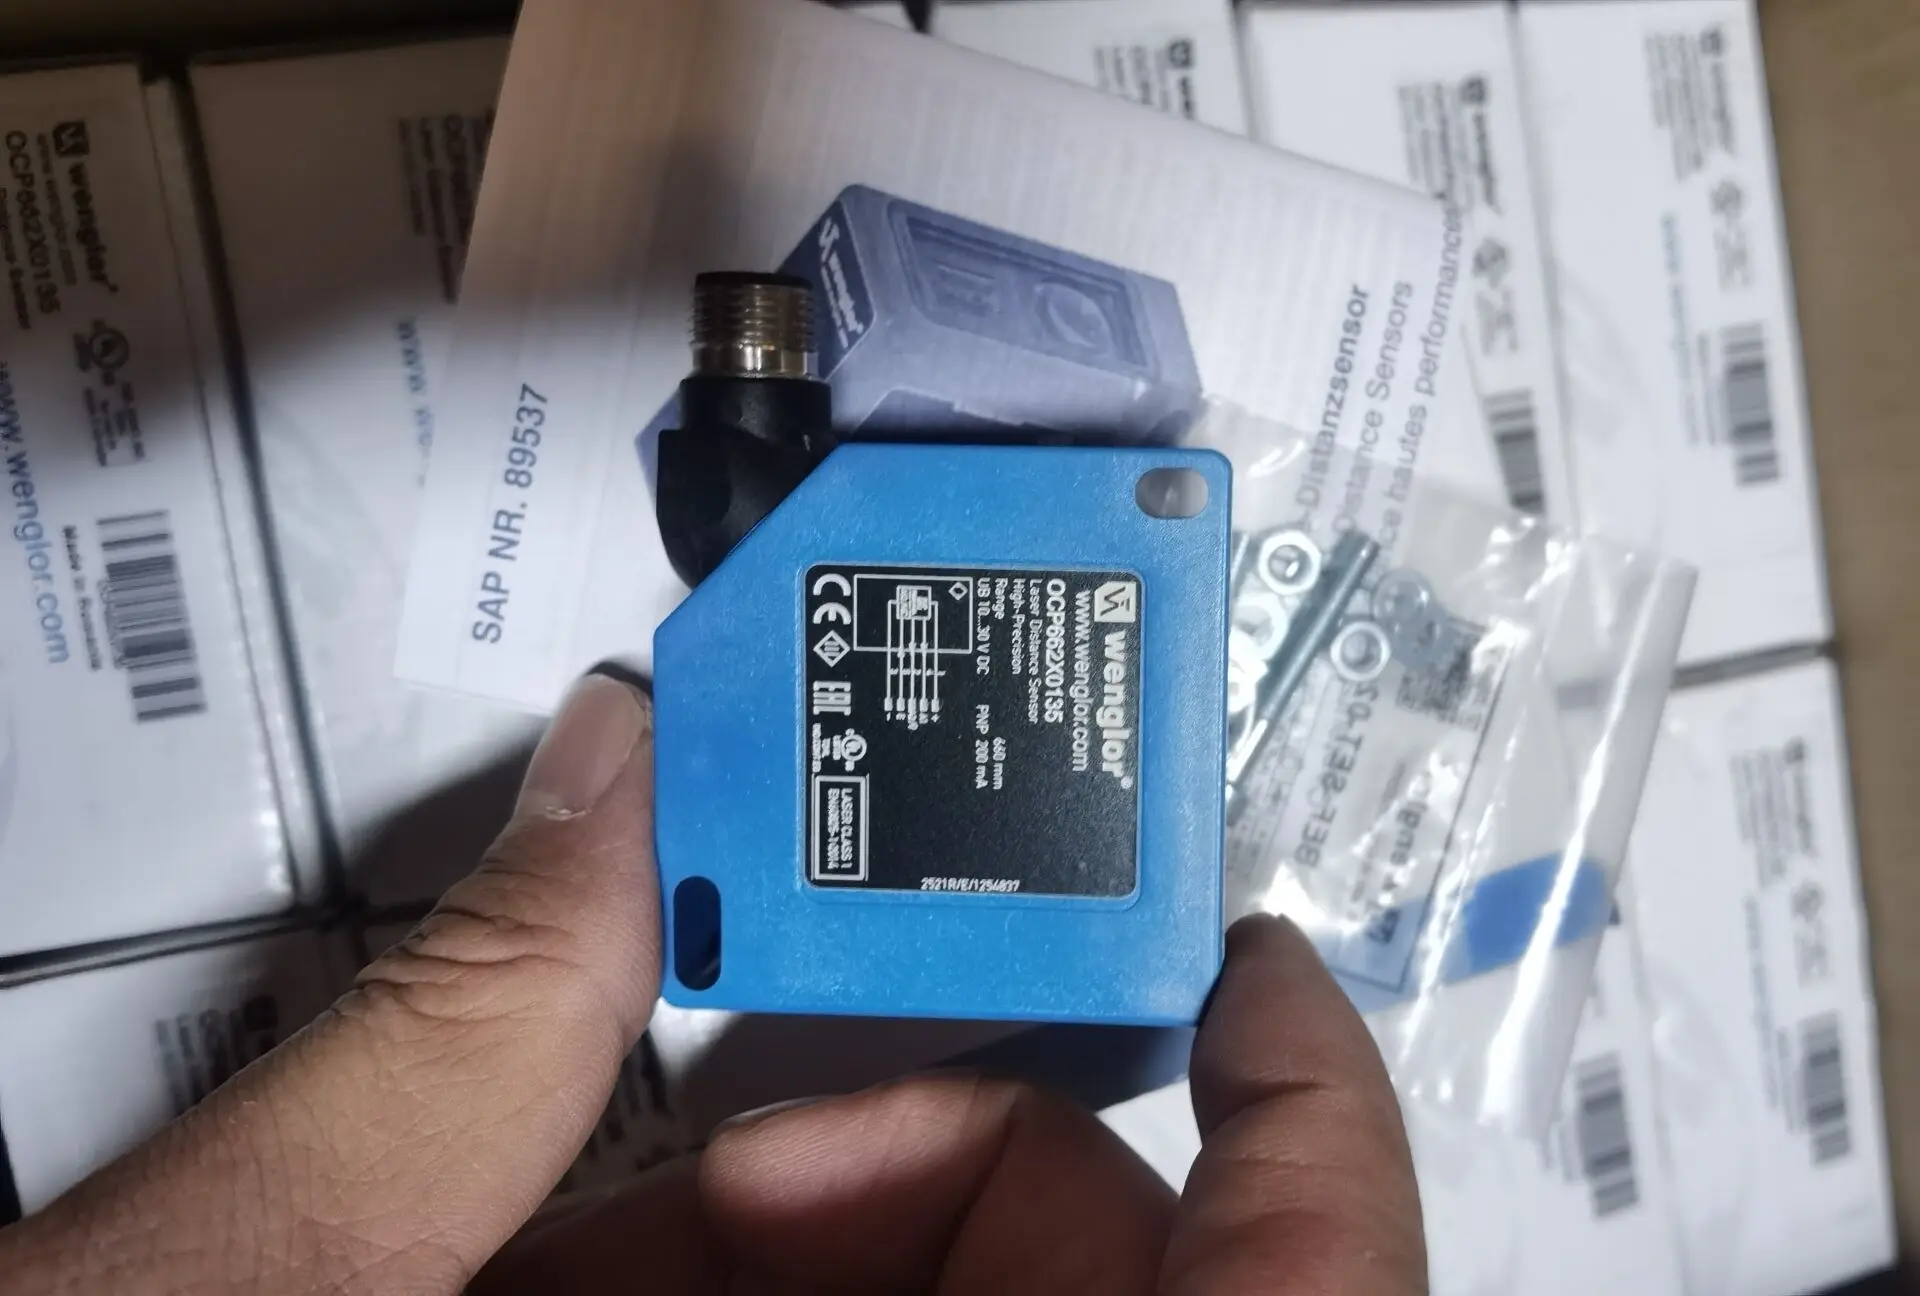 

Original OCP662X0135 OY2P303A0135 laser sensor